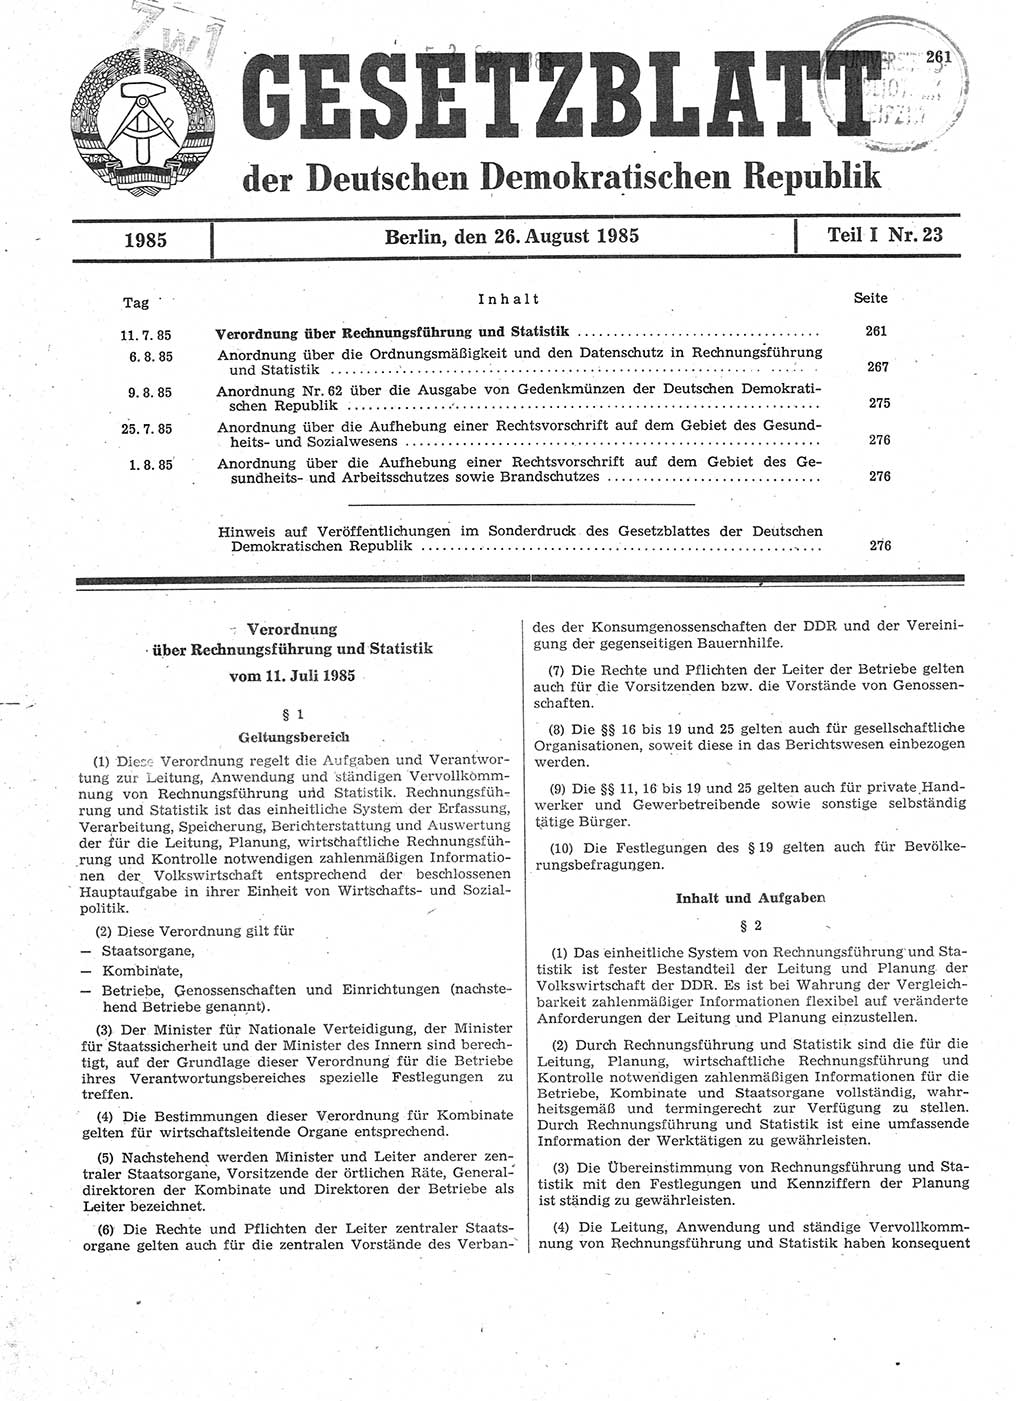 Gesetzblatt (GBl.) der Deutschen Demokratischen Republik (DDR) Teil Ⅰ 1985, Seite 261 (GBl. DDR Ⅰ 1985, S. 261)